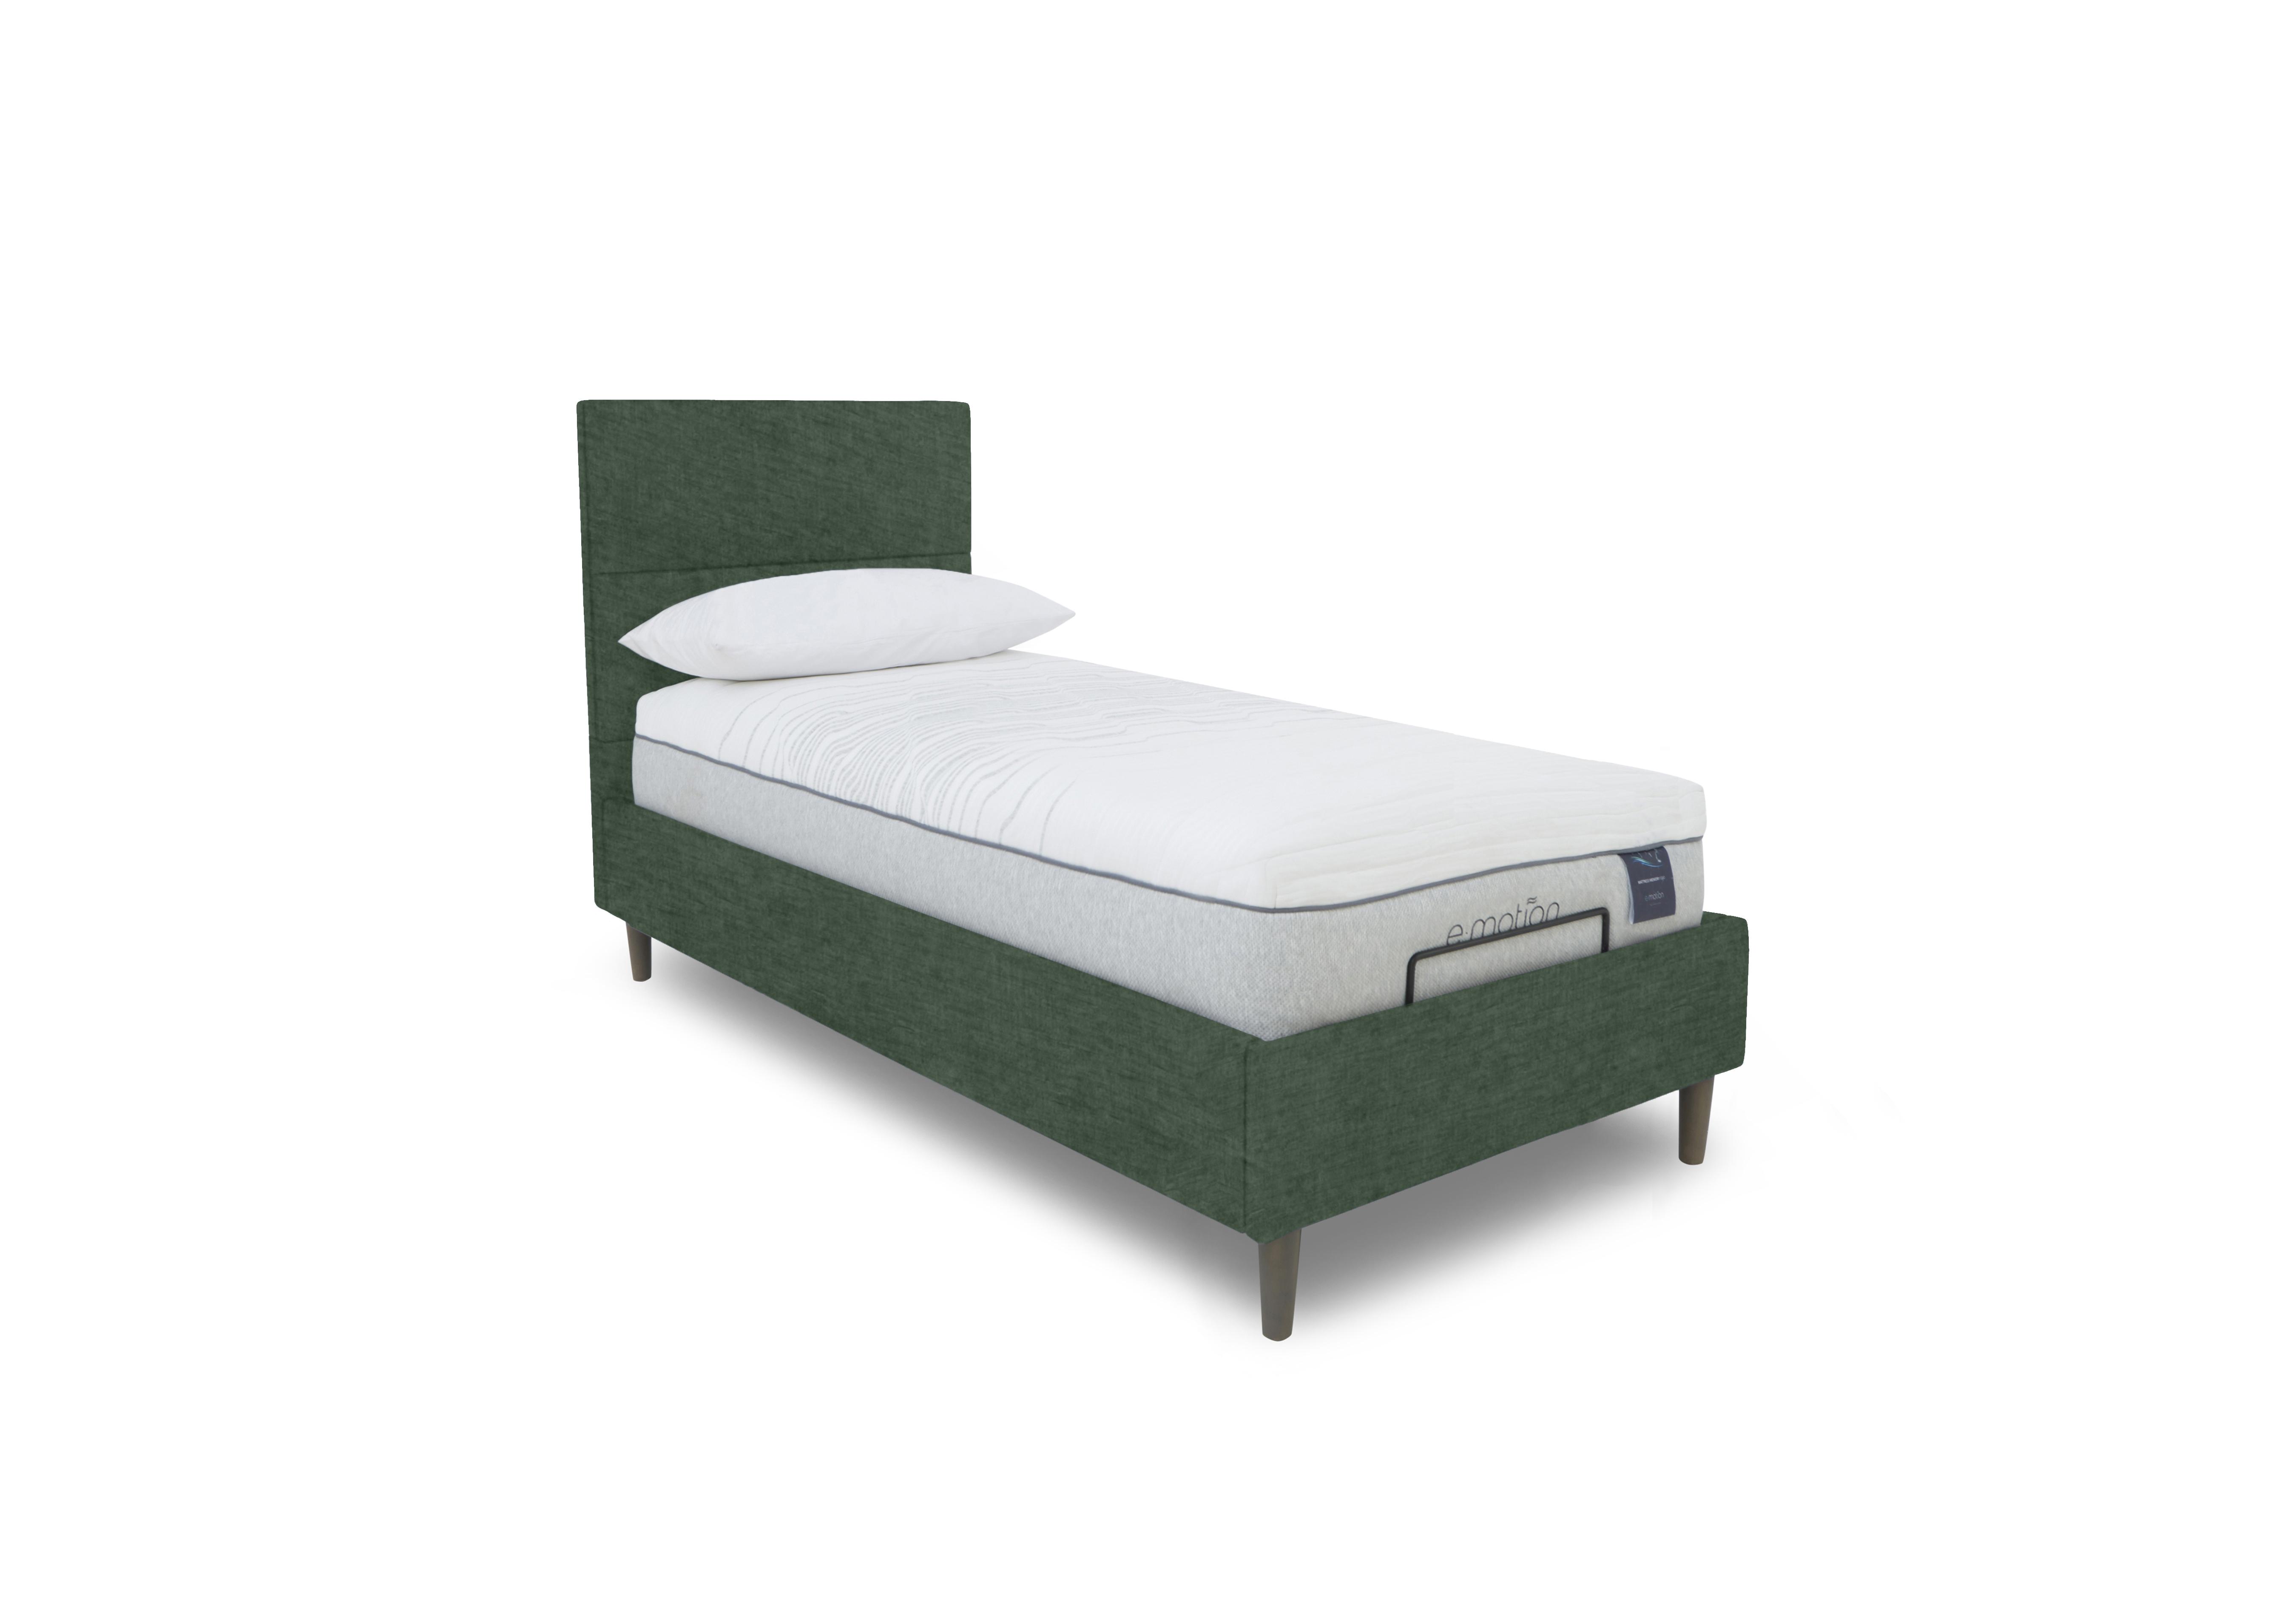 E-Motion Sakura Adjustable Bed Frame in 502 Tormaline Green on Furniture Village